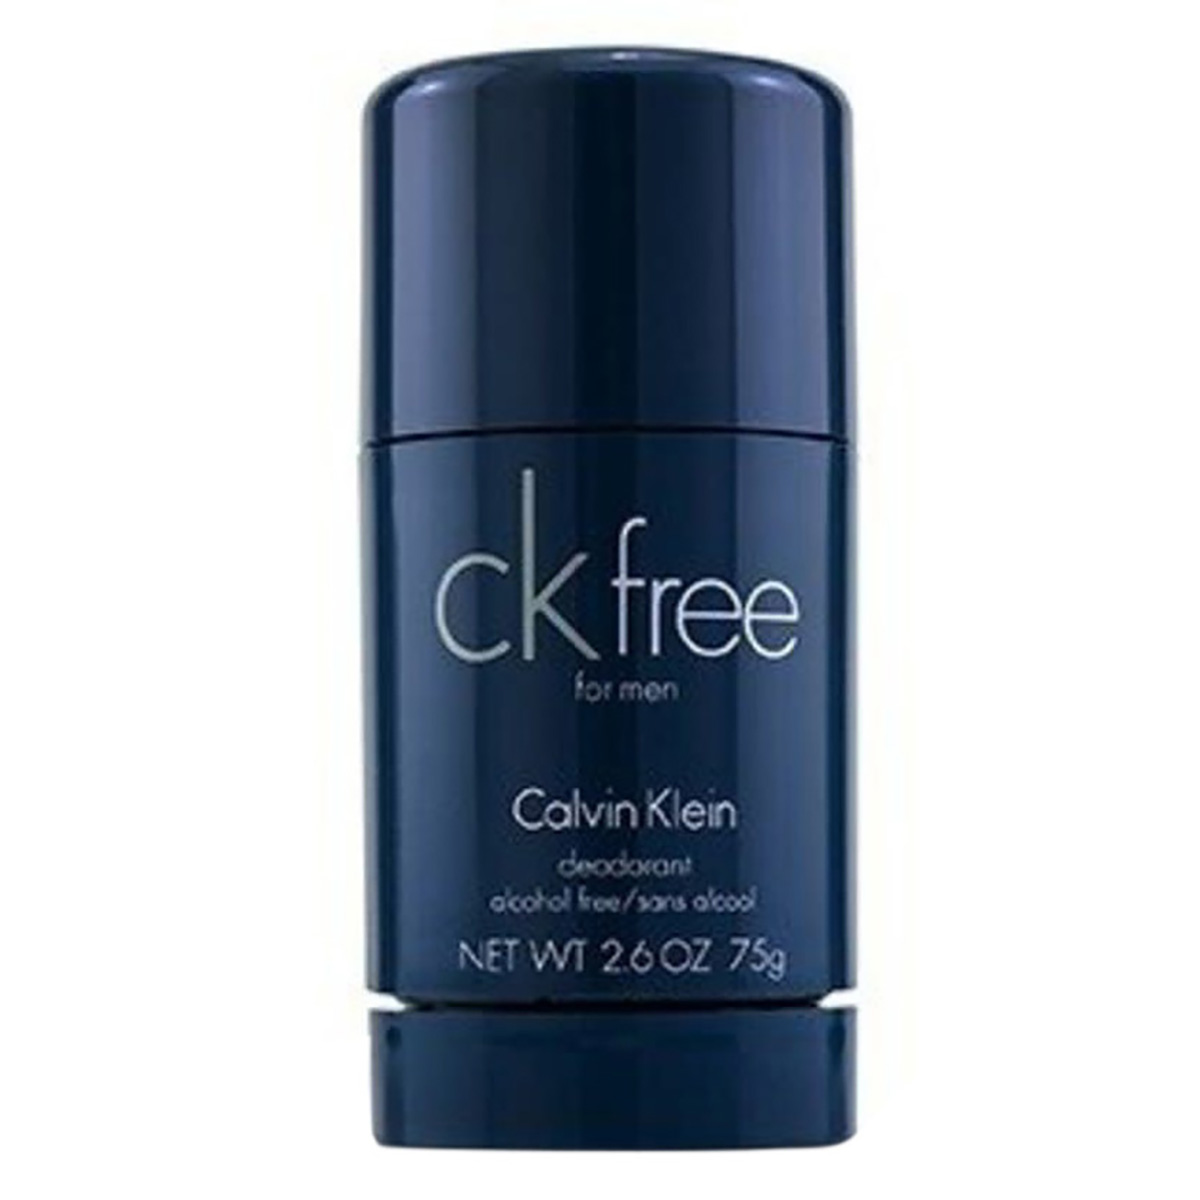 Calvin Klein Ck Free /  Deodorant Stick 2.6 oz (m) In N/a